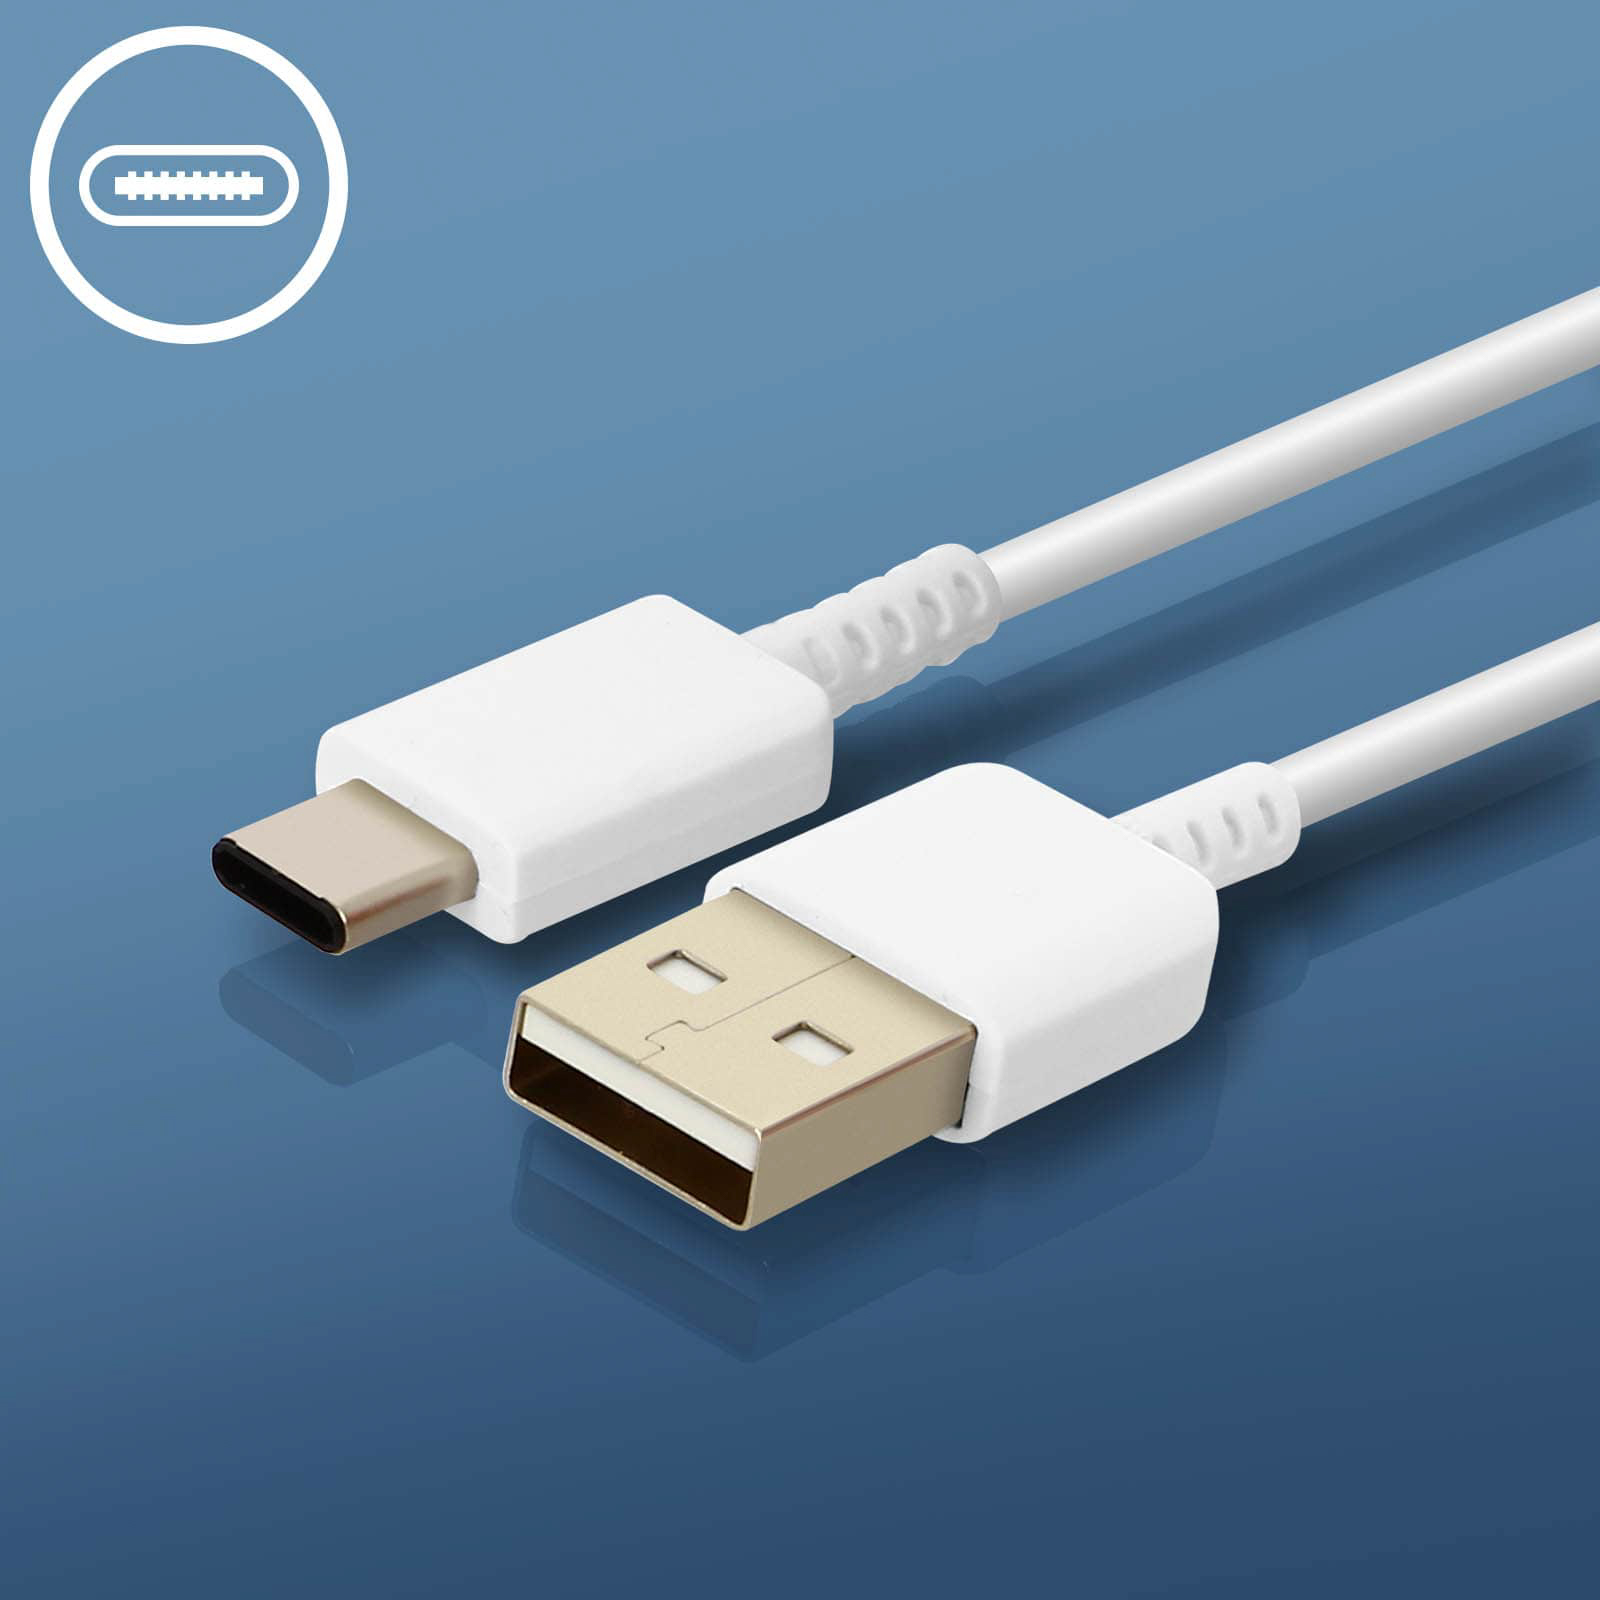 Netzteil, Wand-Ladegerät 2A SAMSUNG Weiß USB Netzteile Samsung,